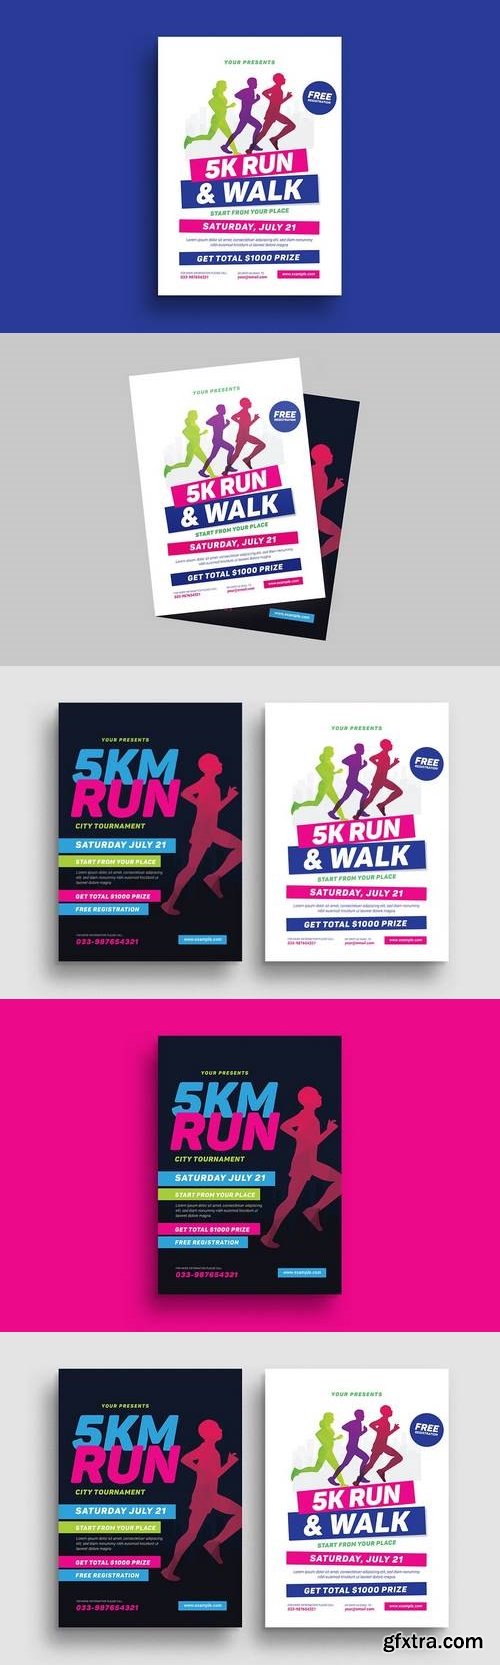 5k Run Event Flyer